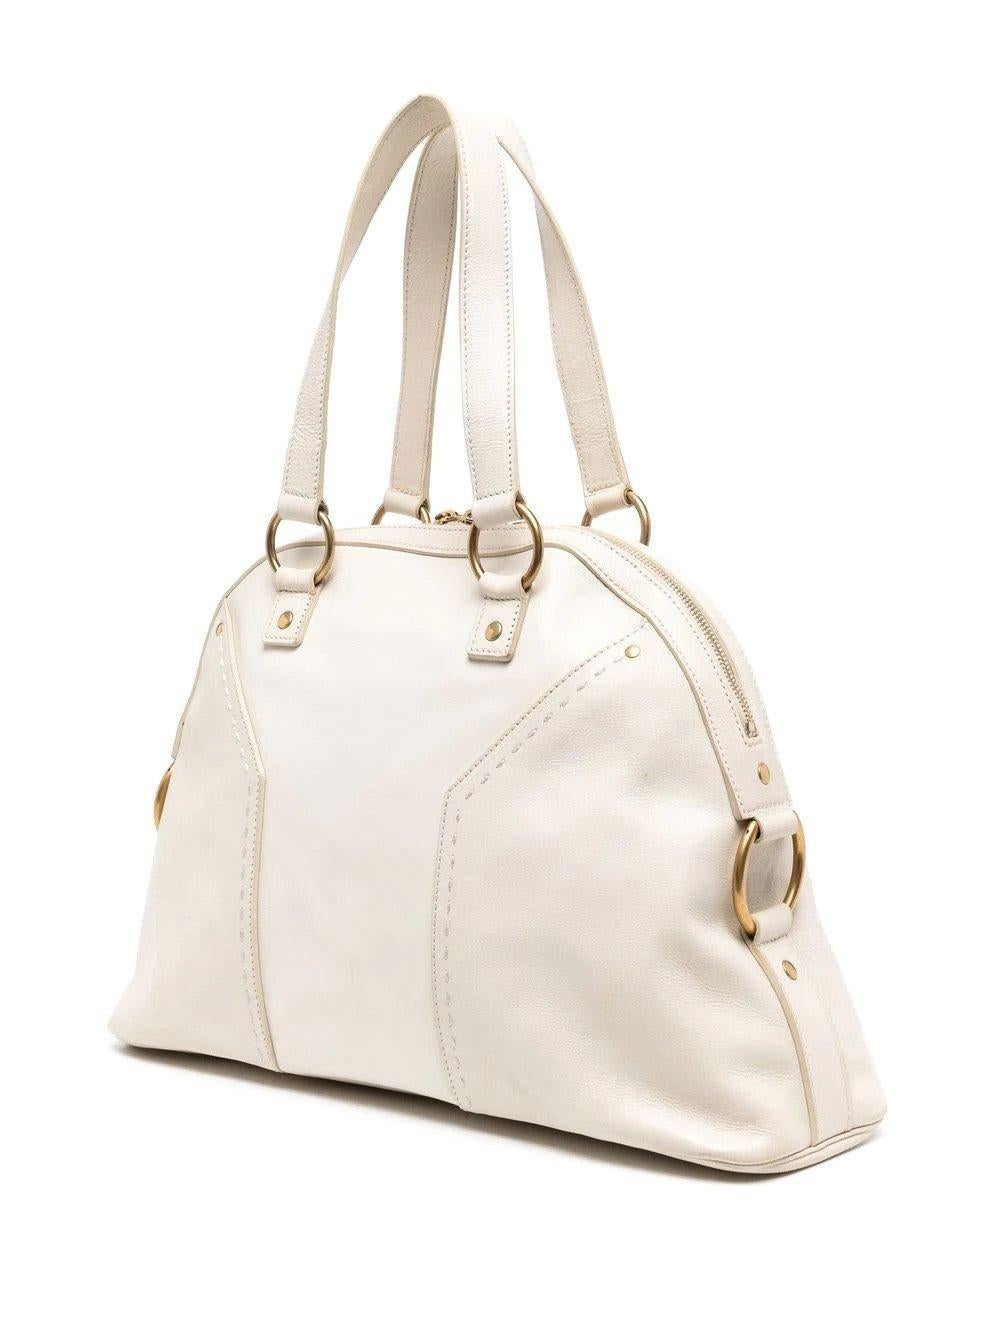 Die YSL Muse Leather Tote Bag wurde erstmals im Februar 2006 vorgestellt und zog die Blicke vieler Handtaschenliebhaber auf sich. Bis heute ist die Tasche berühmt und gilt als klassisch und zeitlos. Und wie alle zeitlosen Handtaschen werden Sie nie